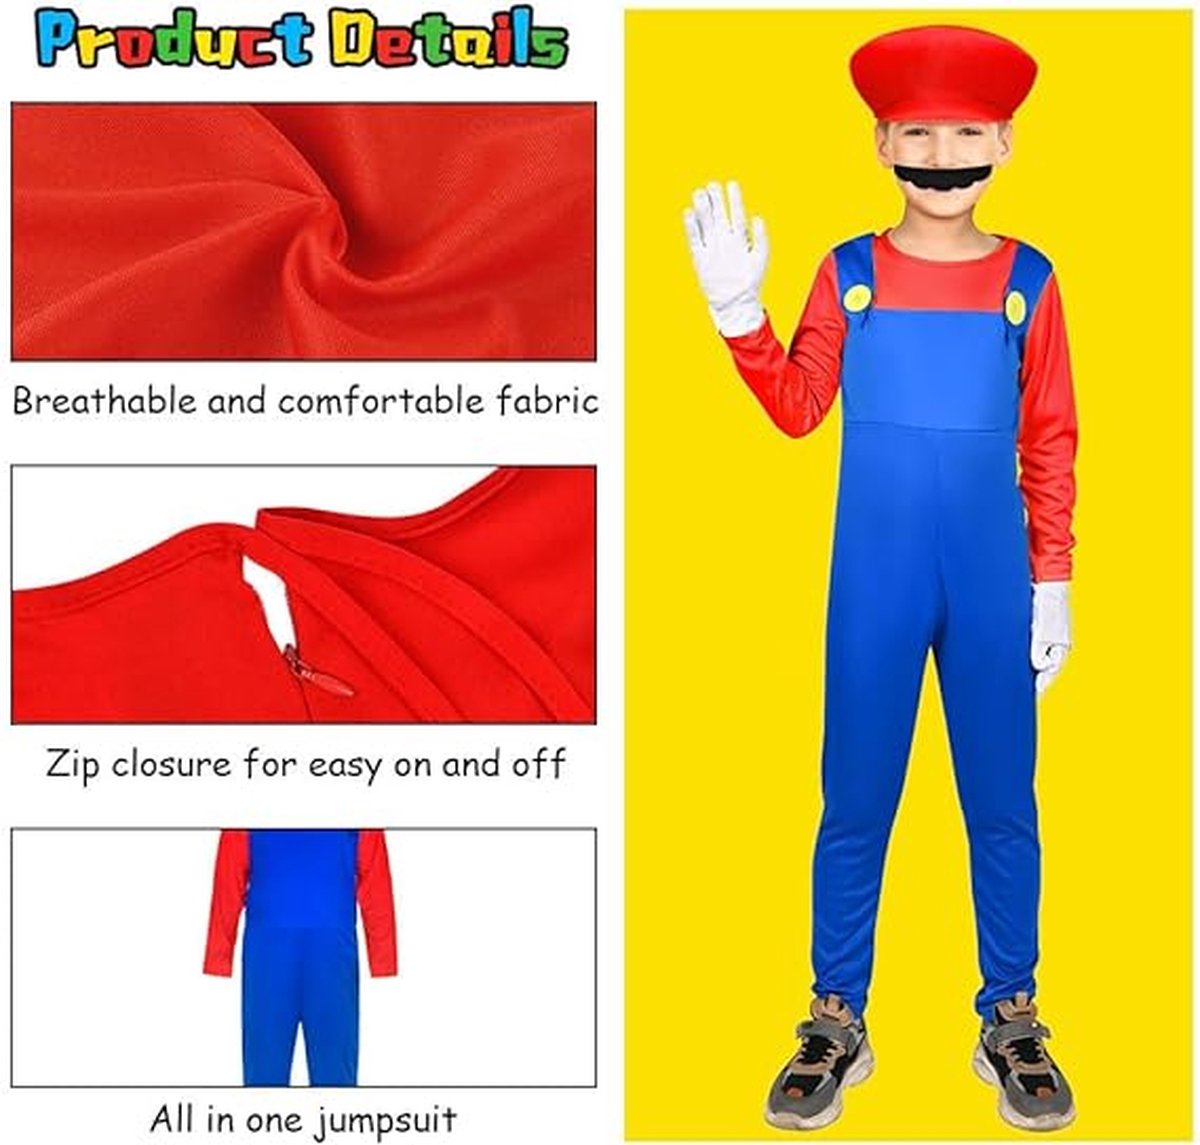 Déguisement Mario™ - Enfant